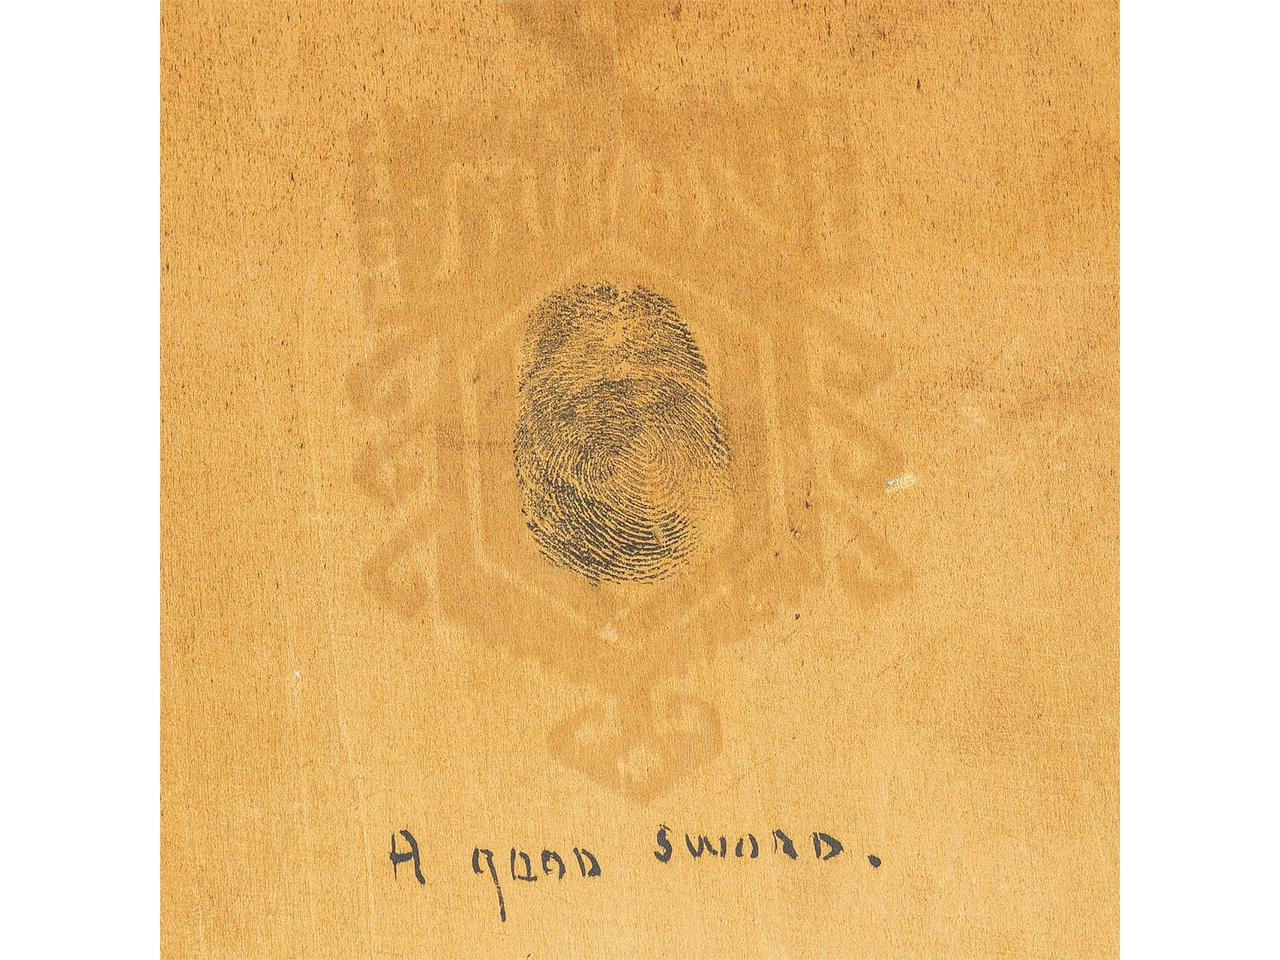 ADDISON THOMAS MILLAR
Américain, 1850-1913

Le marchand d'épées

Signé Addison AT&T Millar 

Huile sur carton
10 in x 8 in 
Encadré : 18 po x 10 po